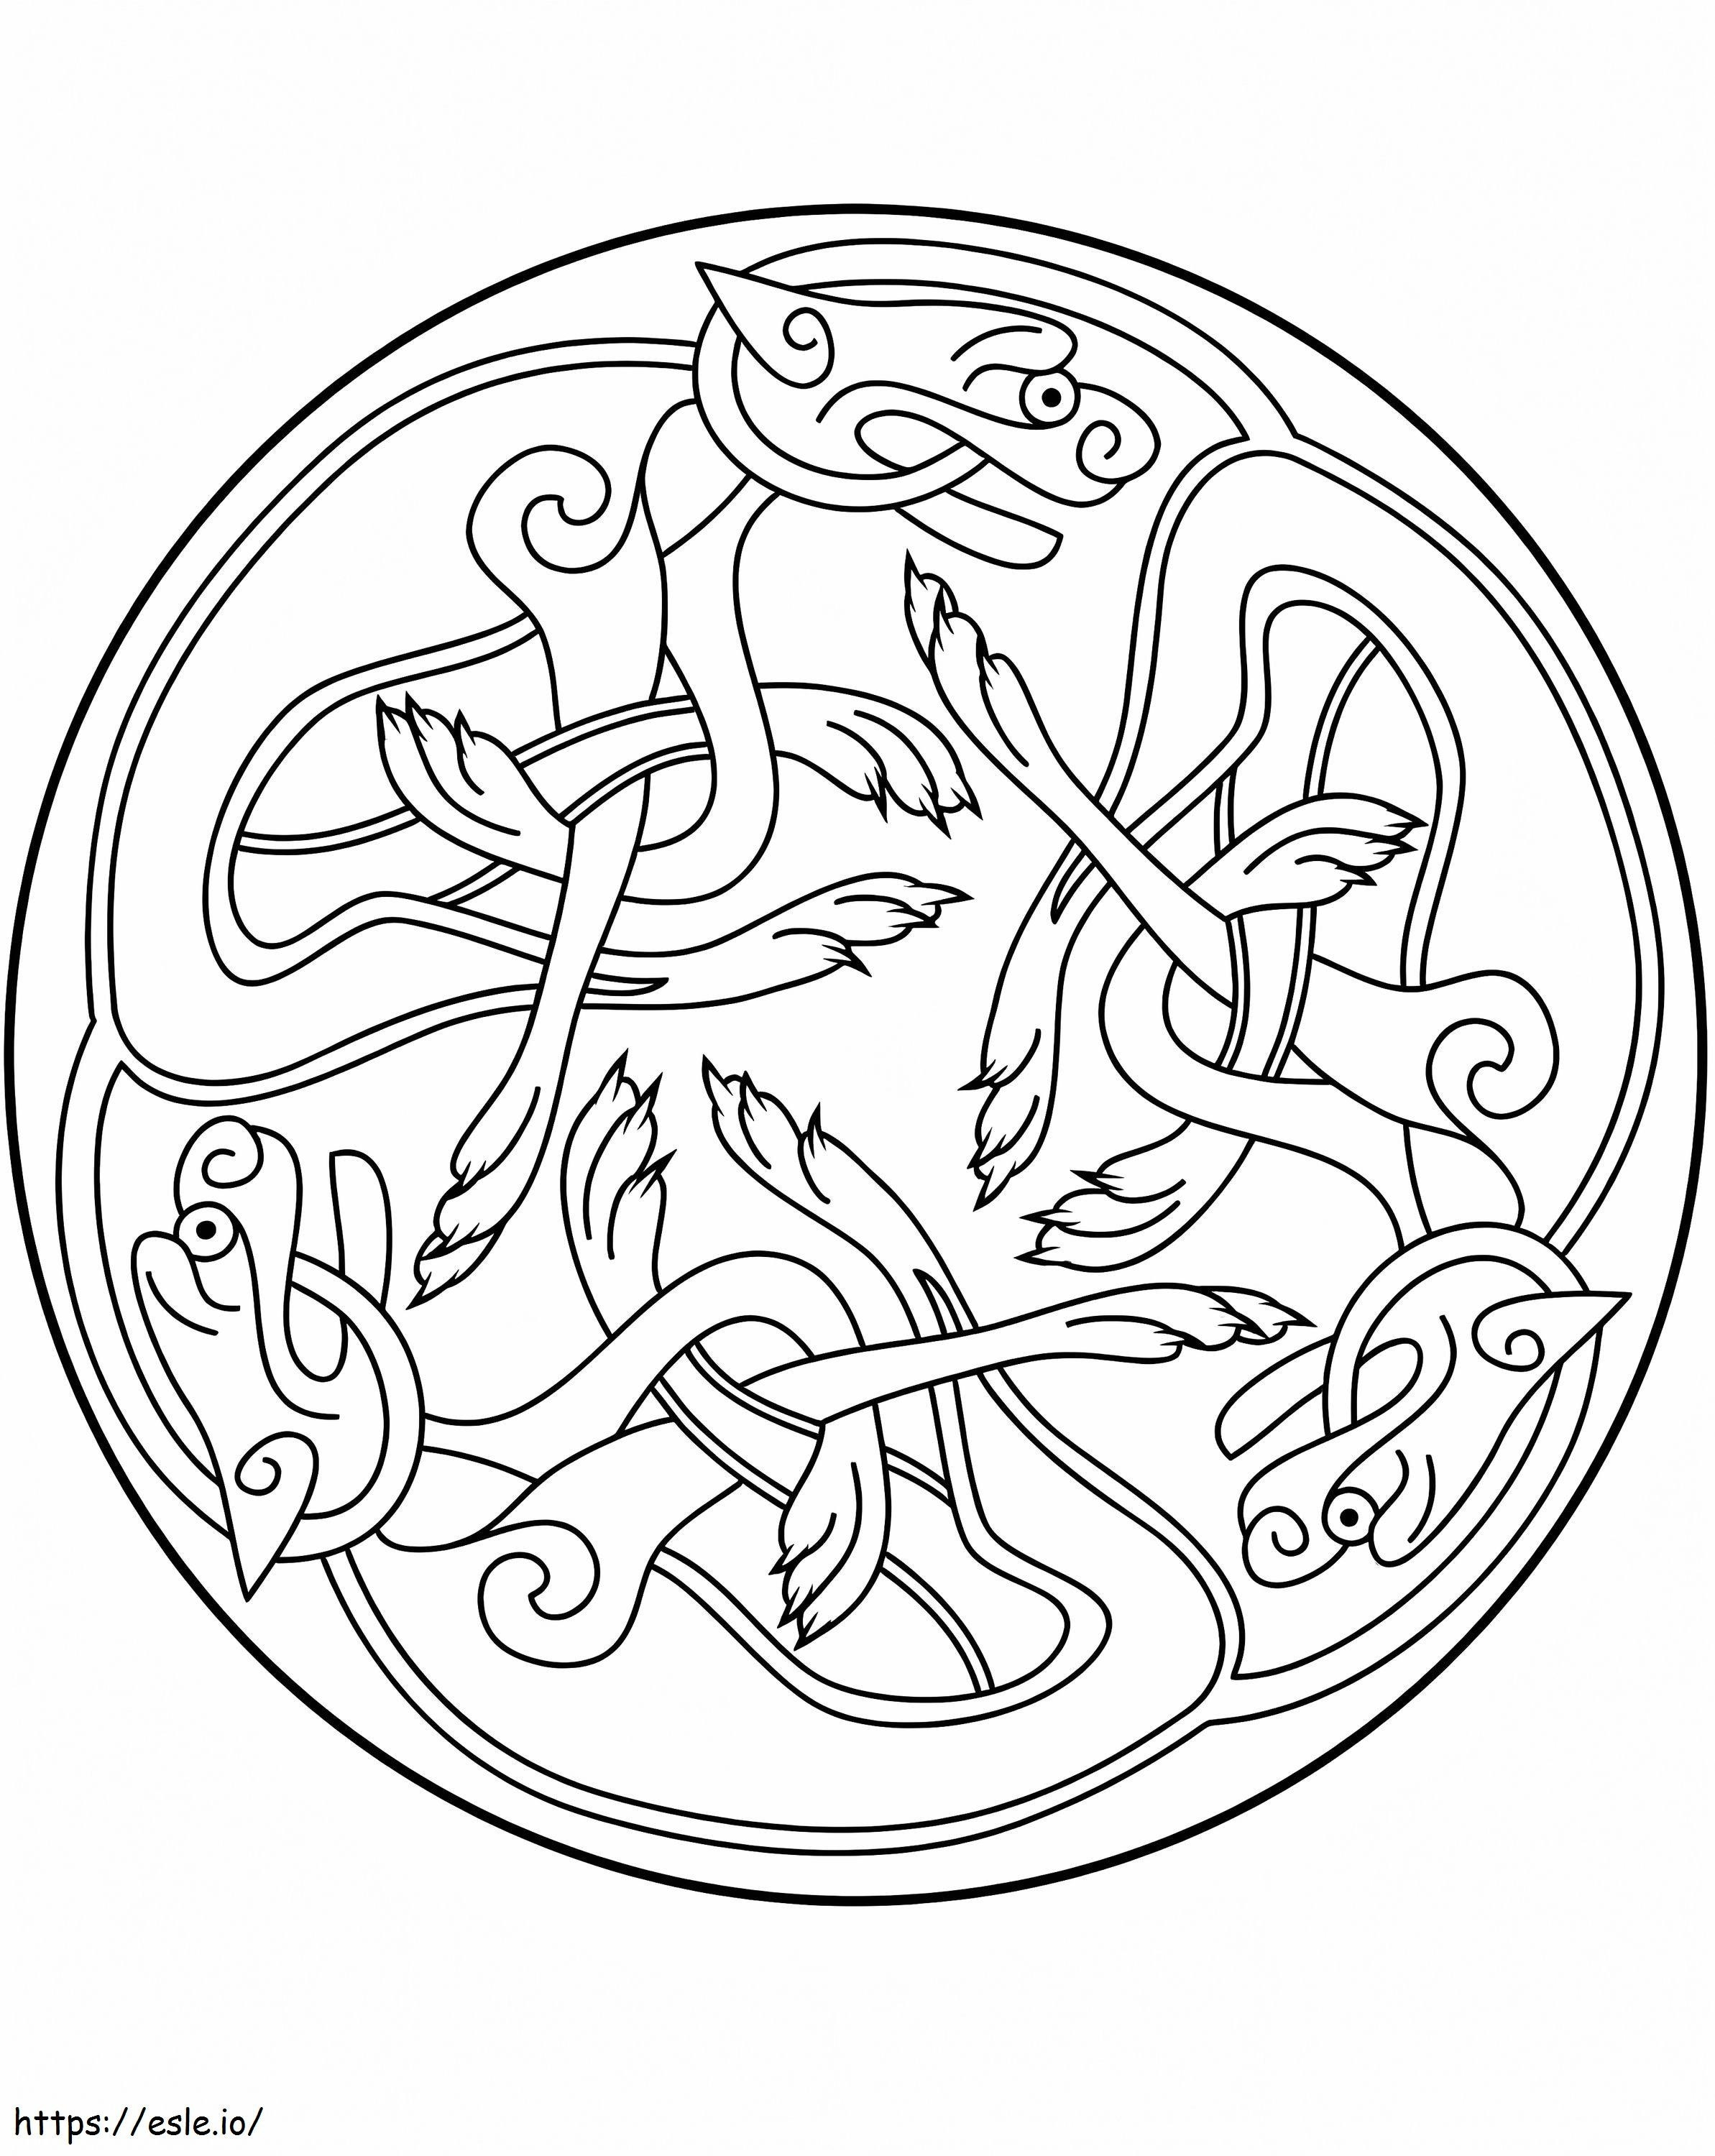 Keltisches Ornamentdesign ausmalbilder